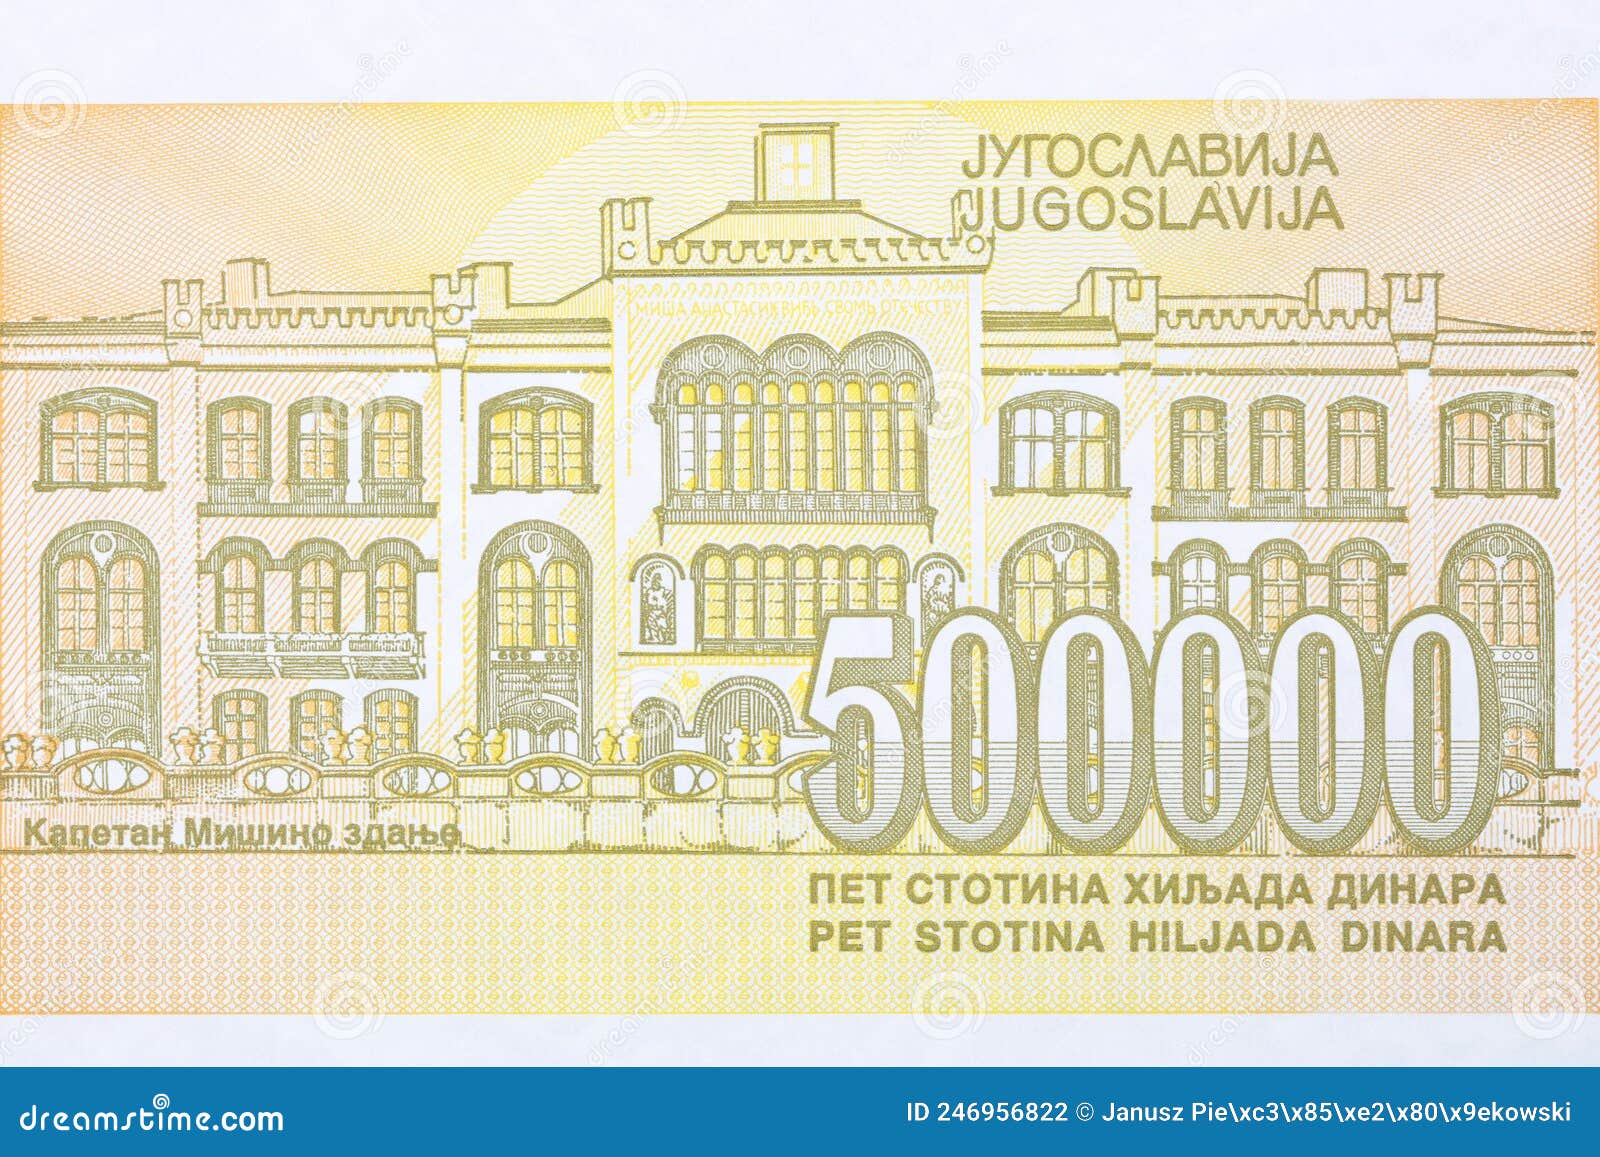 mansion of misa anastasijevic from yugoslav money